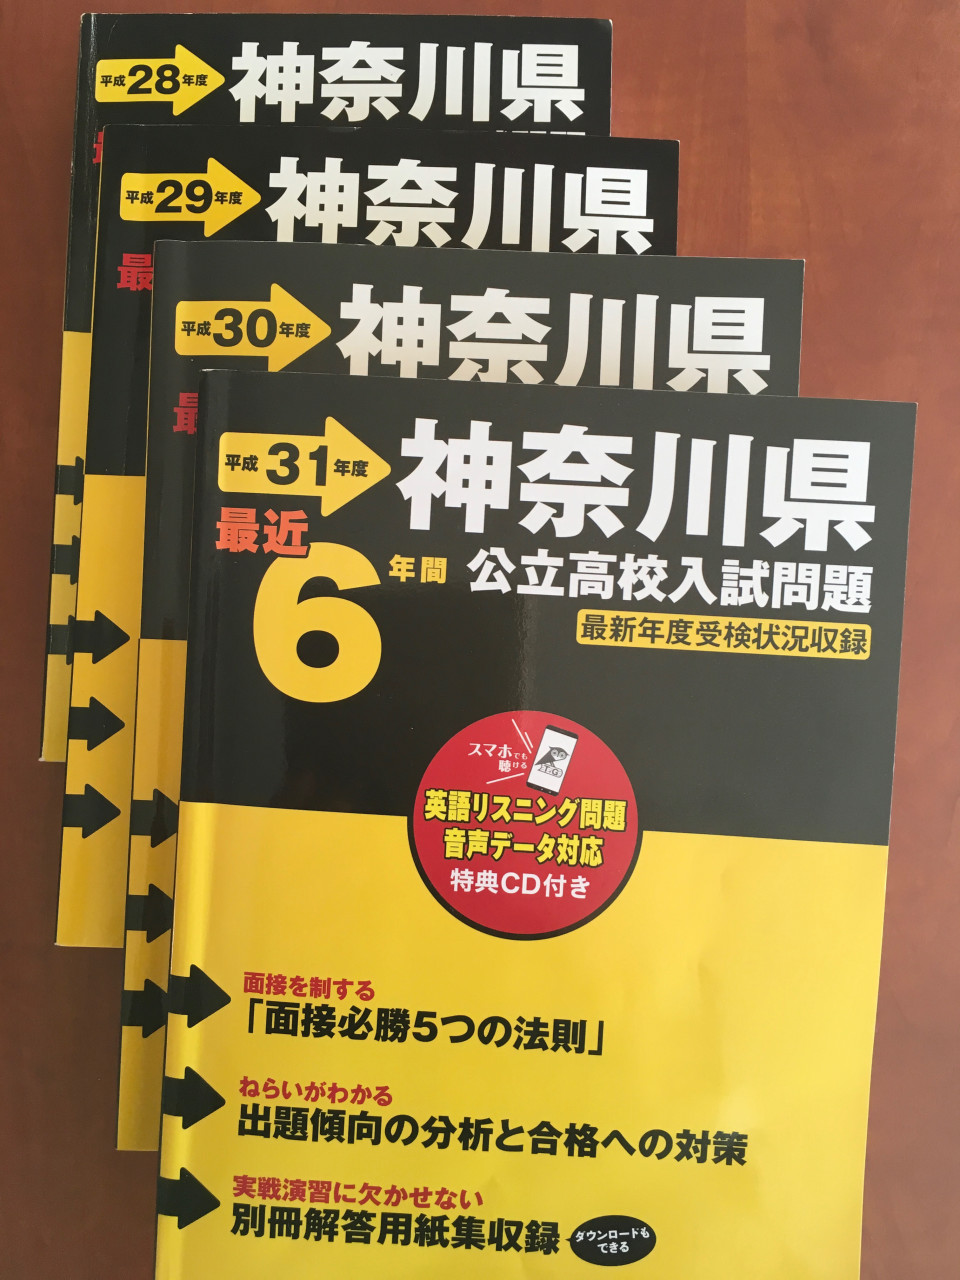 市販されているオススメの神奈川県公立高校入試過去問題集について紹介します 第二の家 ブログ 藤沢市の個別指導塾のお話